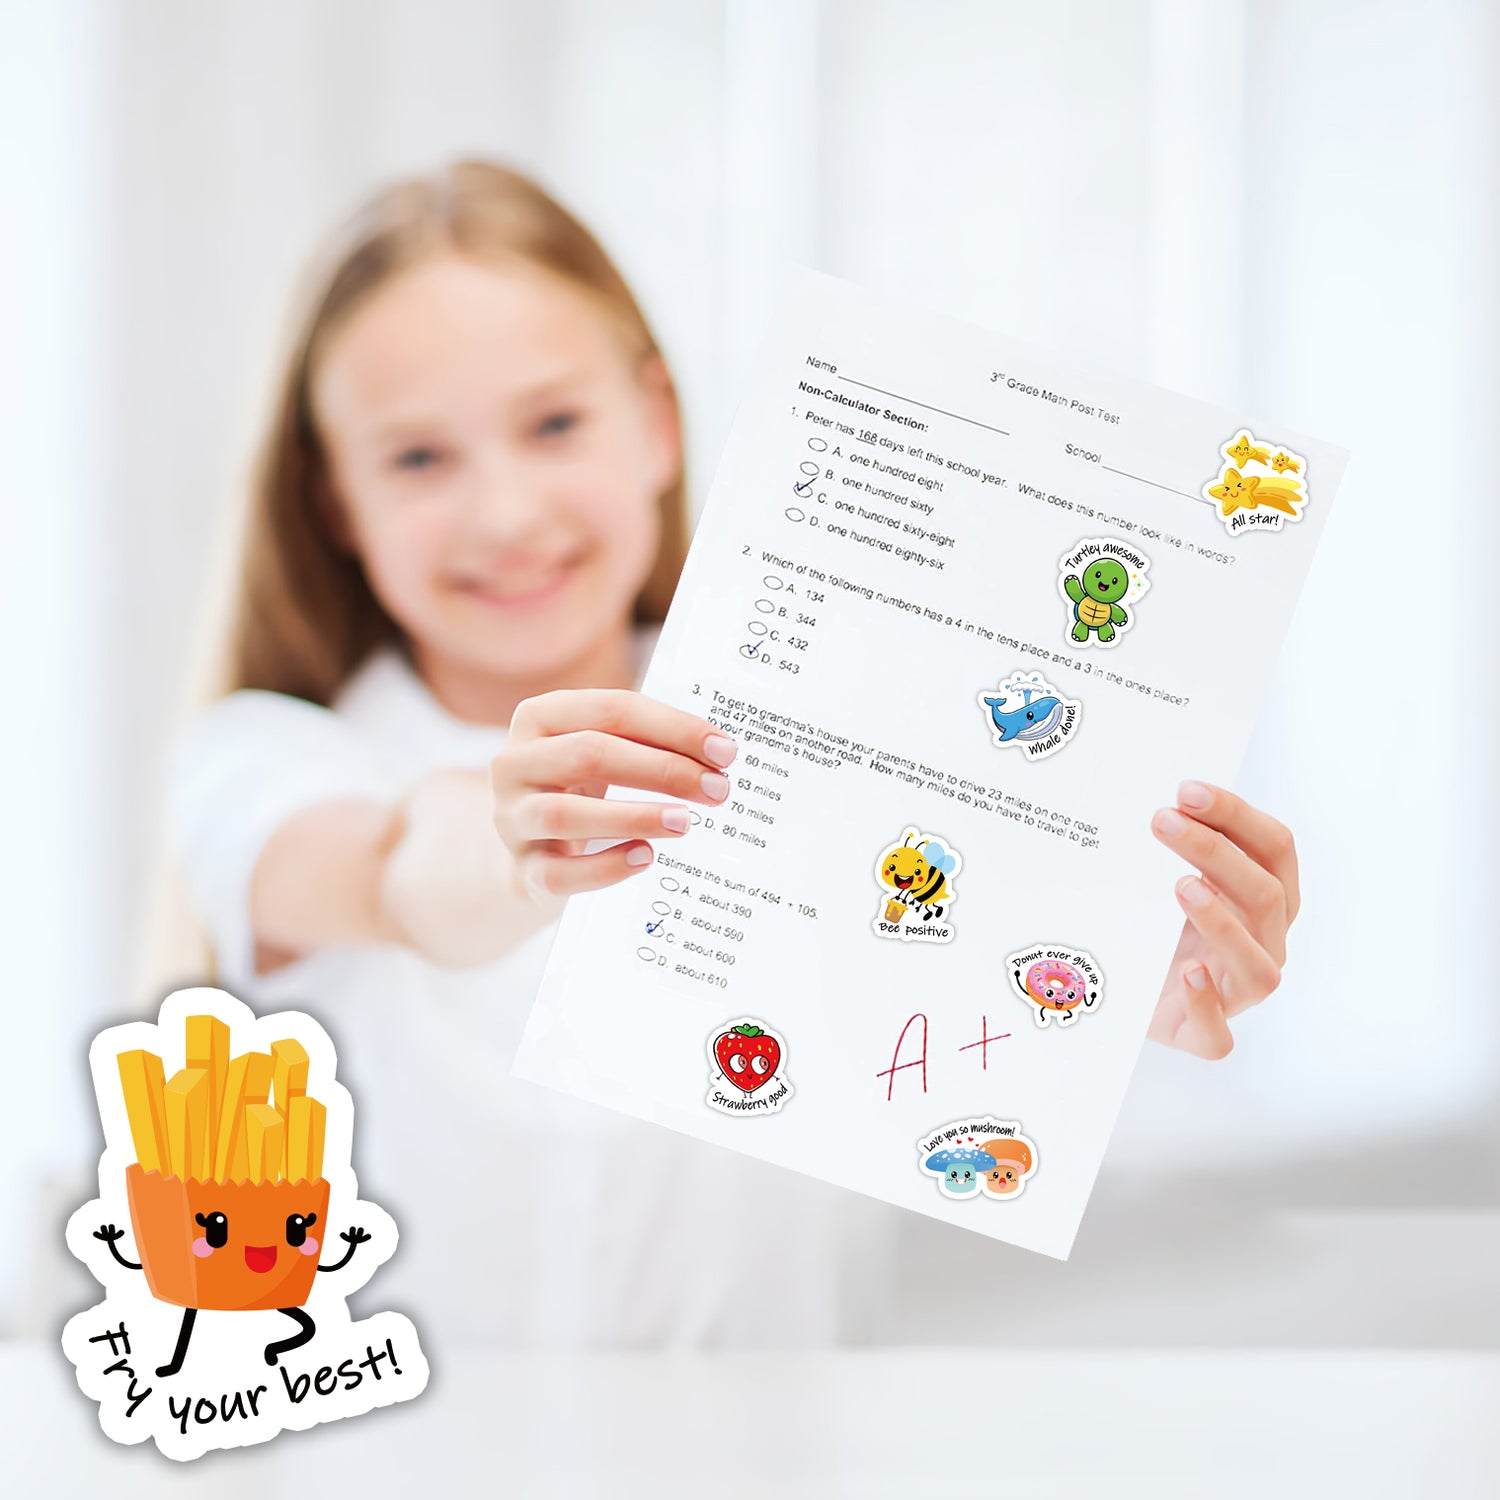 Reward Stickers for Kids,600PCS Motivational Qatar